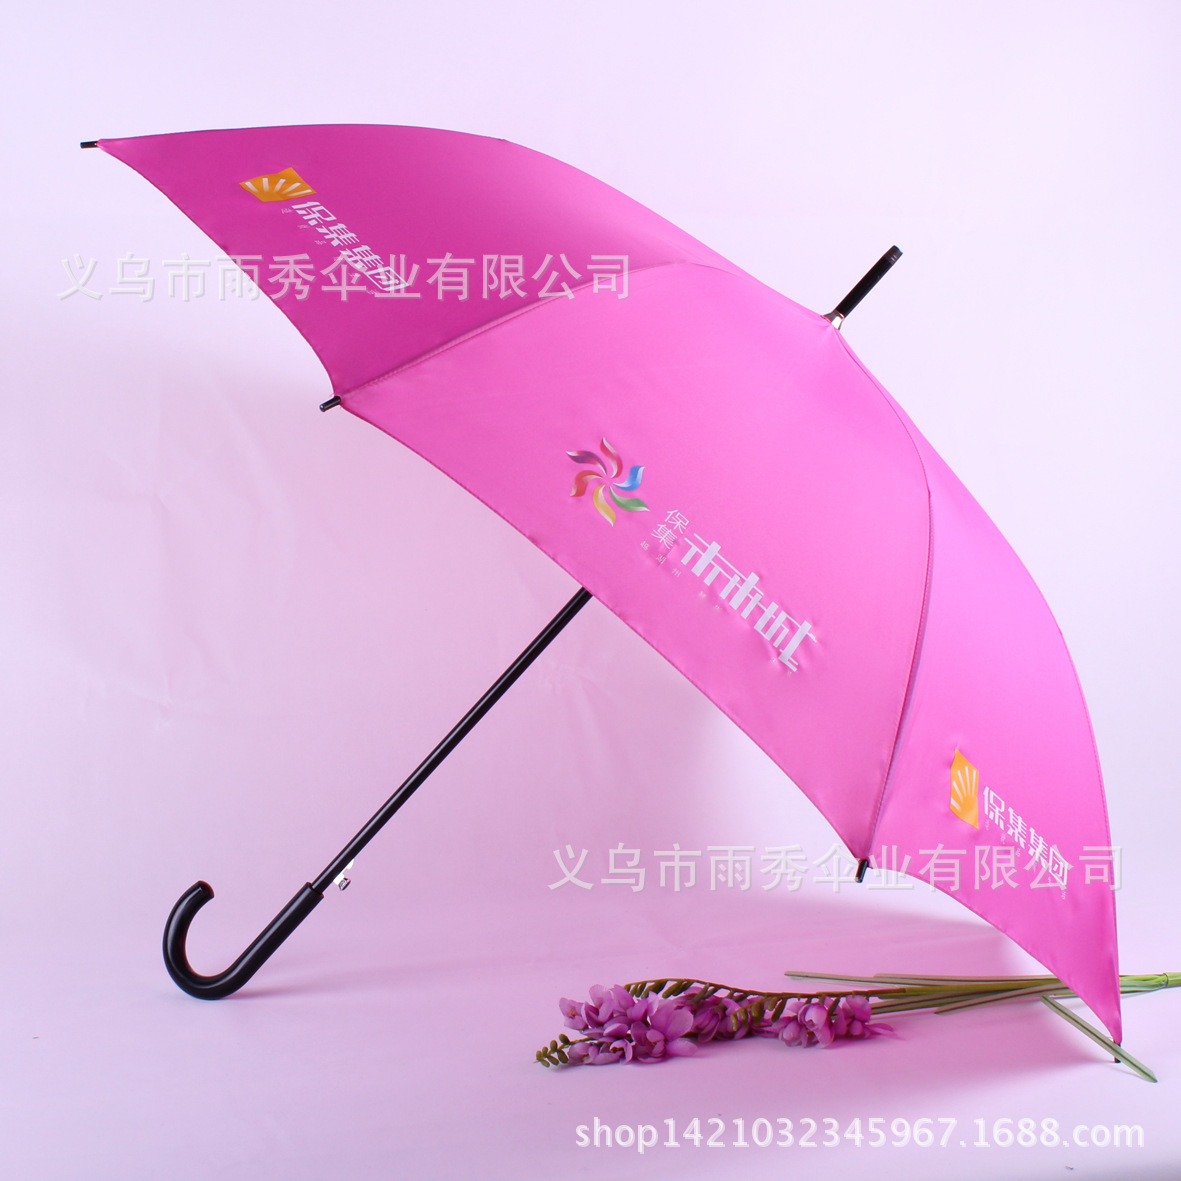 优质移动宽带广告伞精品晴雨伞 厂家定做 可印